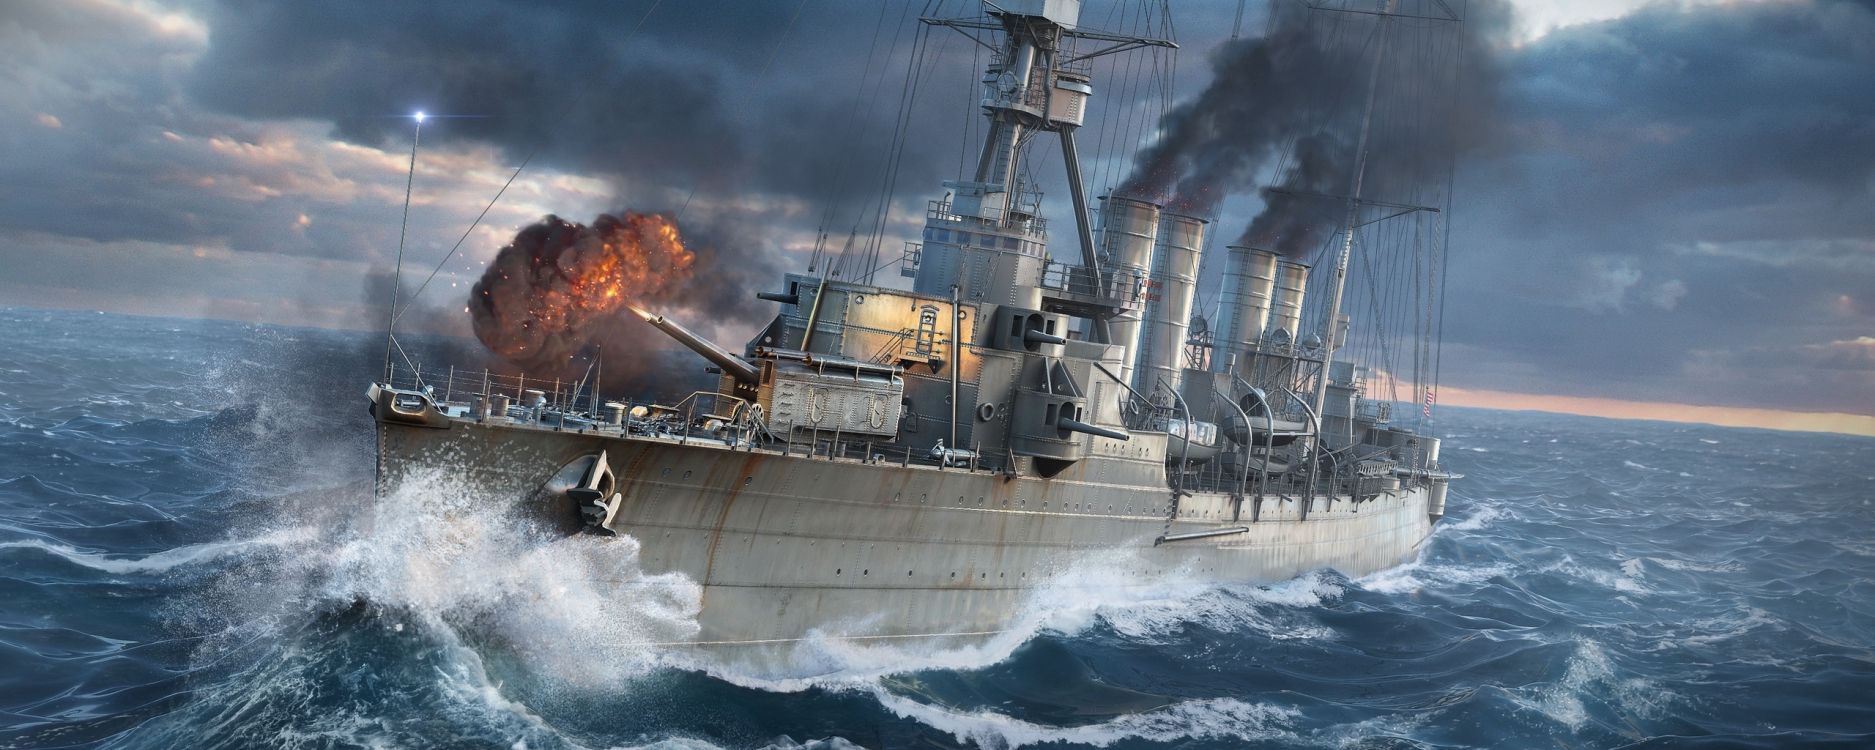 世界的战舰, 船只, 军舰, 海军的船, 战舰 壁纸 2560x1024 允许